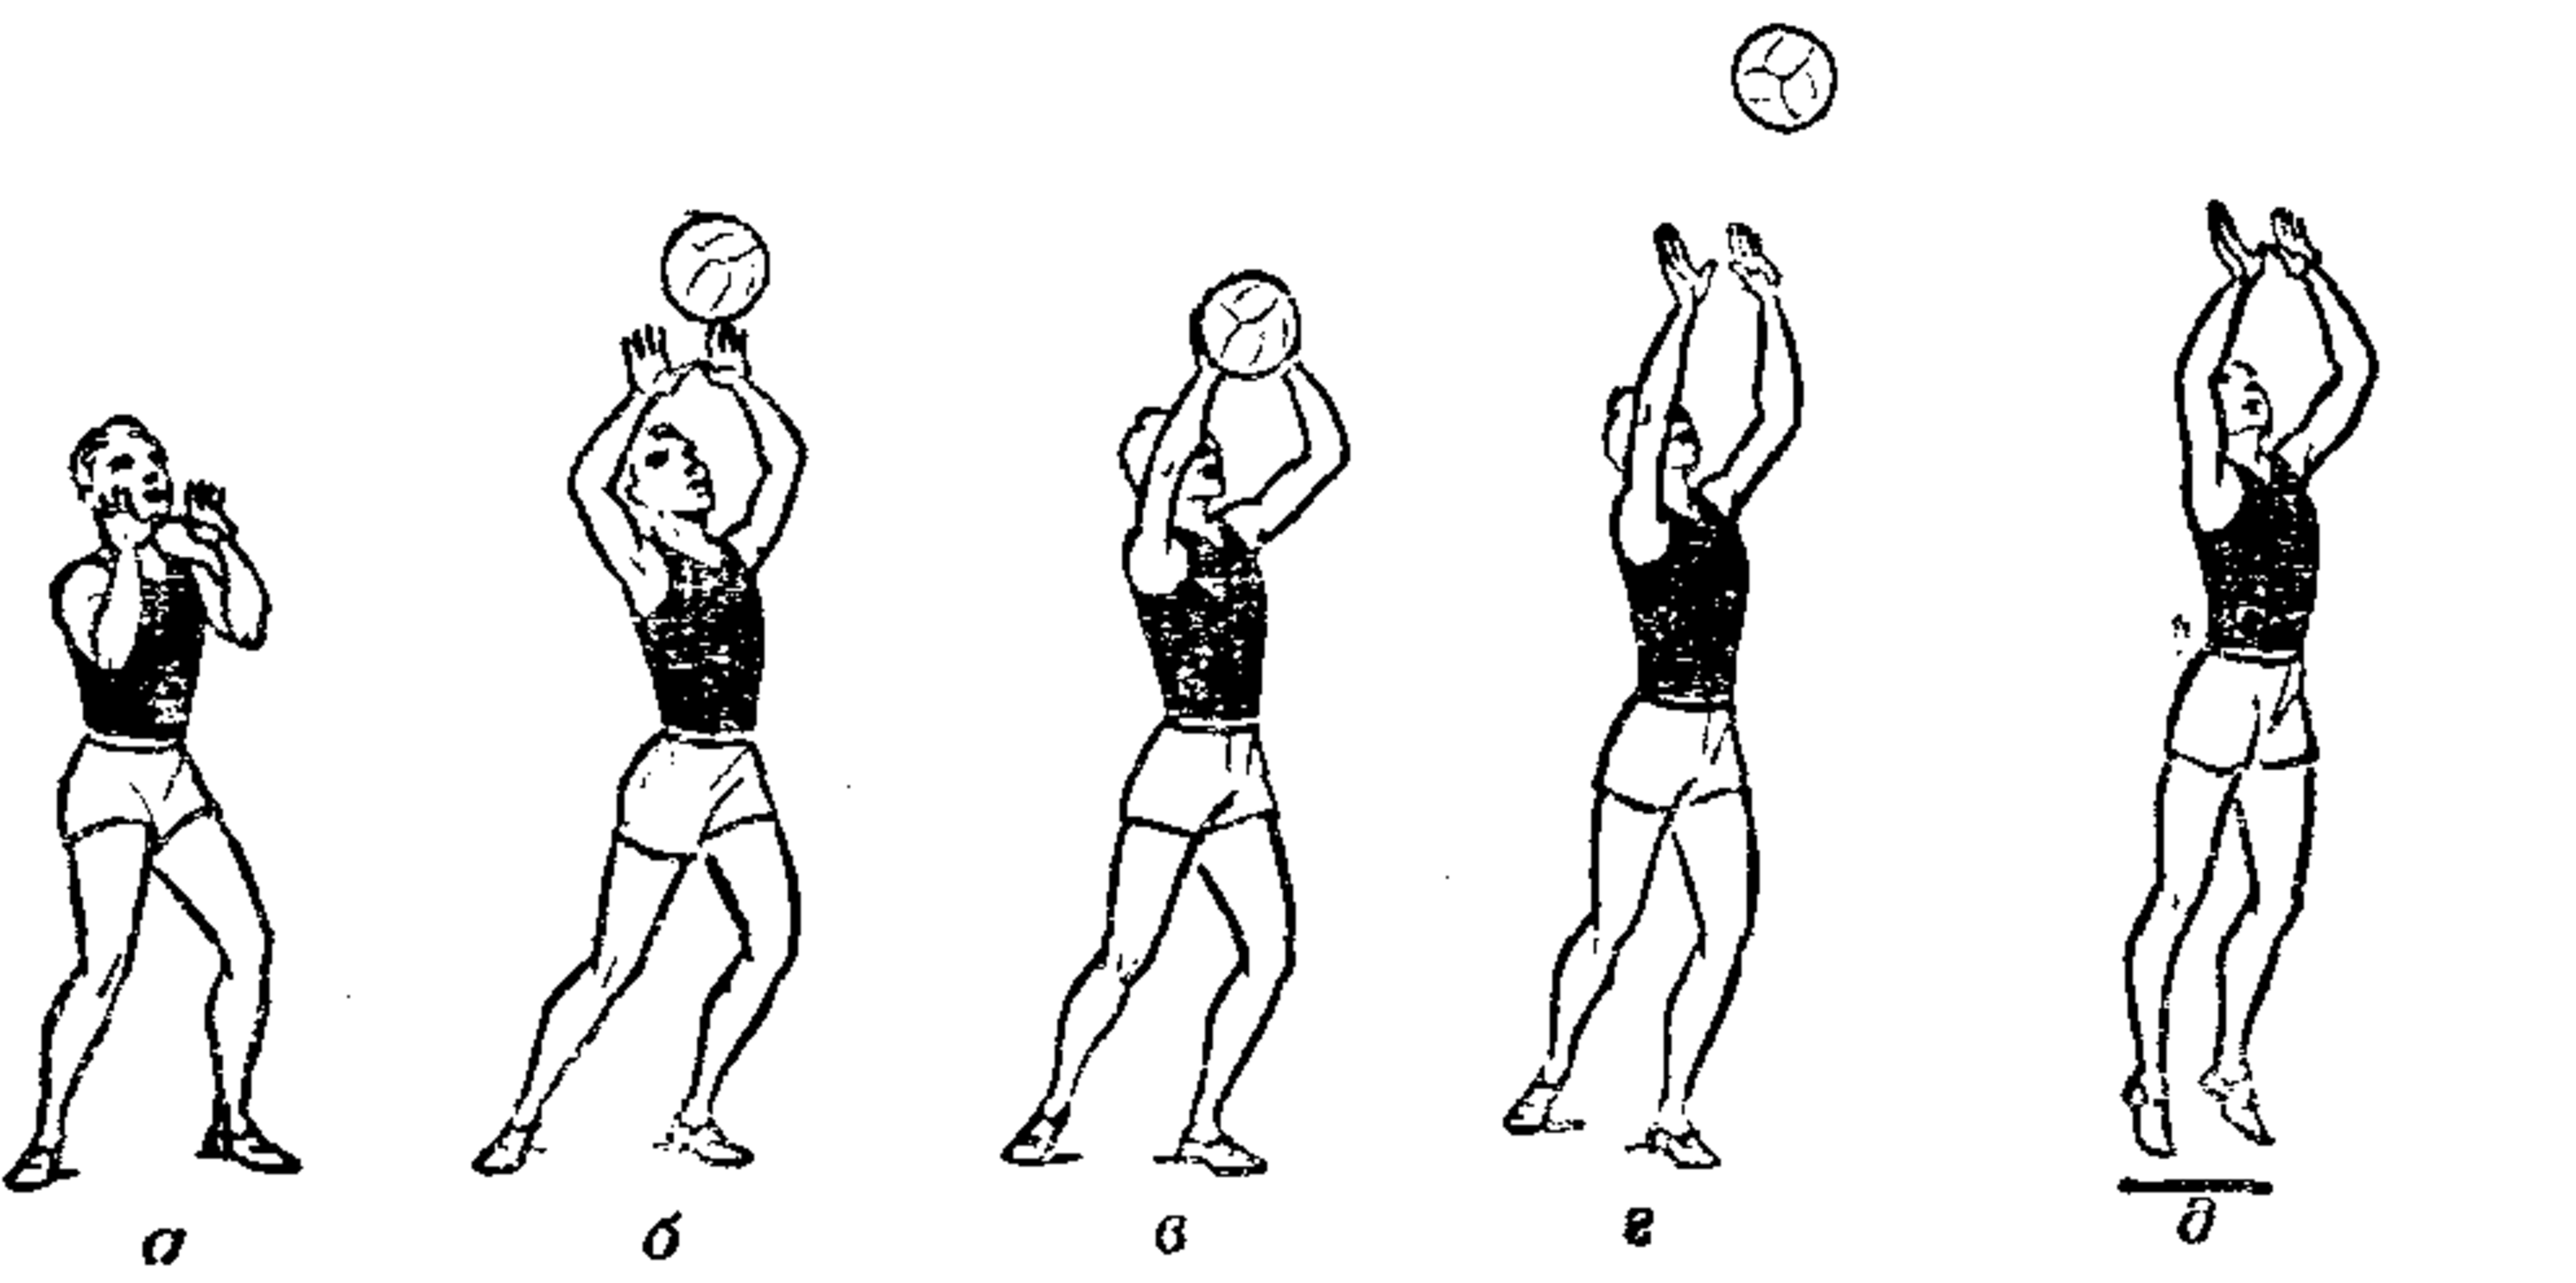 Передача в волейболе. Волейбол техника верхняя передача в волейболе. Техника передачи мяча в волейболе. Волейбол верхний прием и передача мяча техника. Техника приема и передачи мяча сверху двумя руками в волейболе.